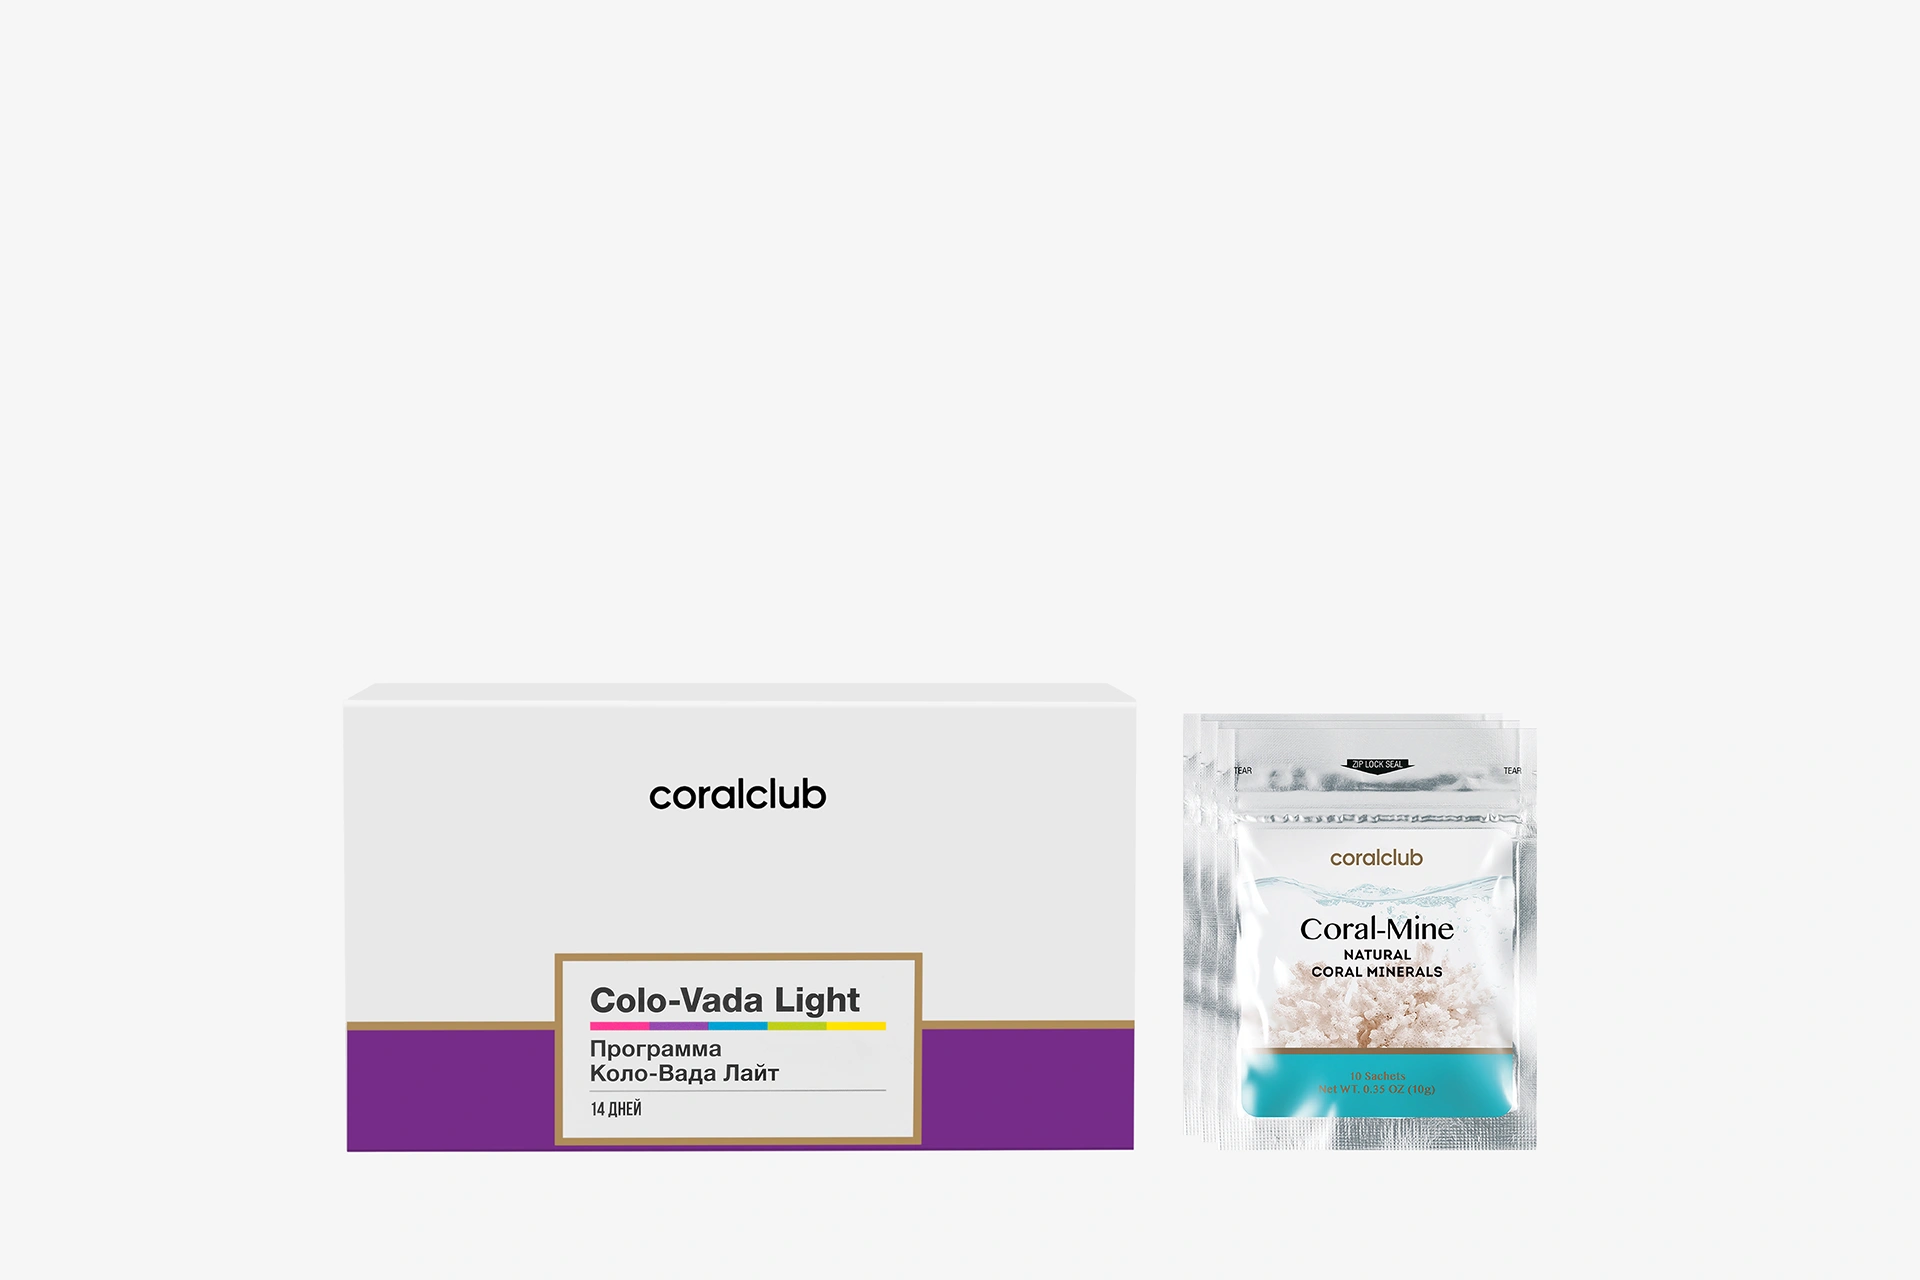 Colo-Vada Light & Coral-Mine